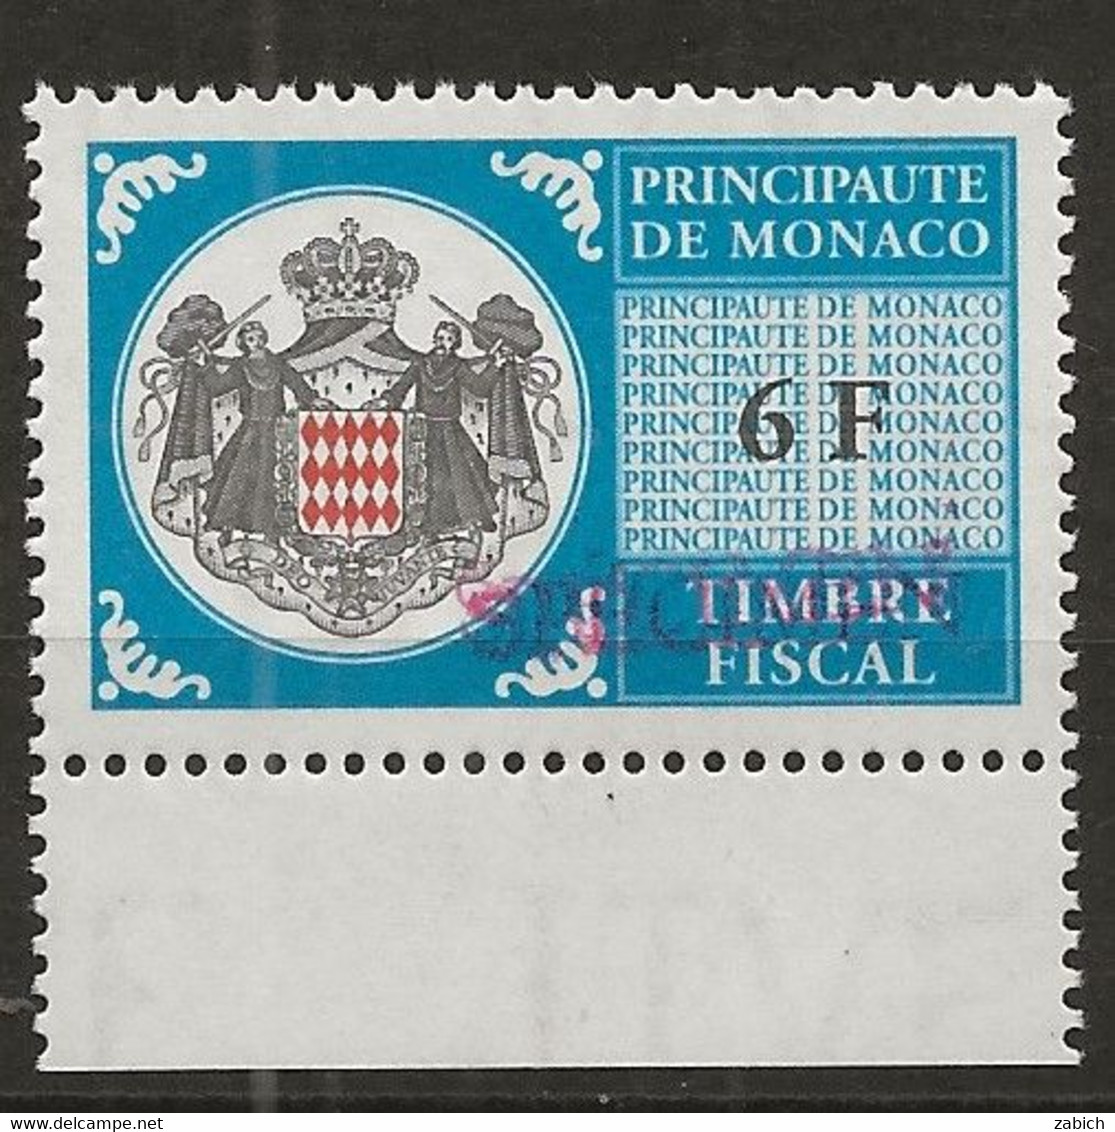 TIMBRES FISCAUX DE MONACO SERIE UNIFIEE N° 101 6F Bleu Rare Surchargé Specimen Neuf Gomme Mnh (**) - Steuermarken